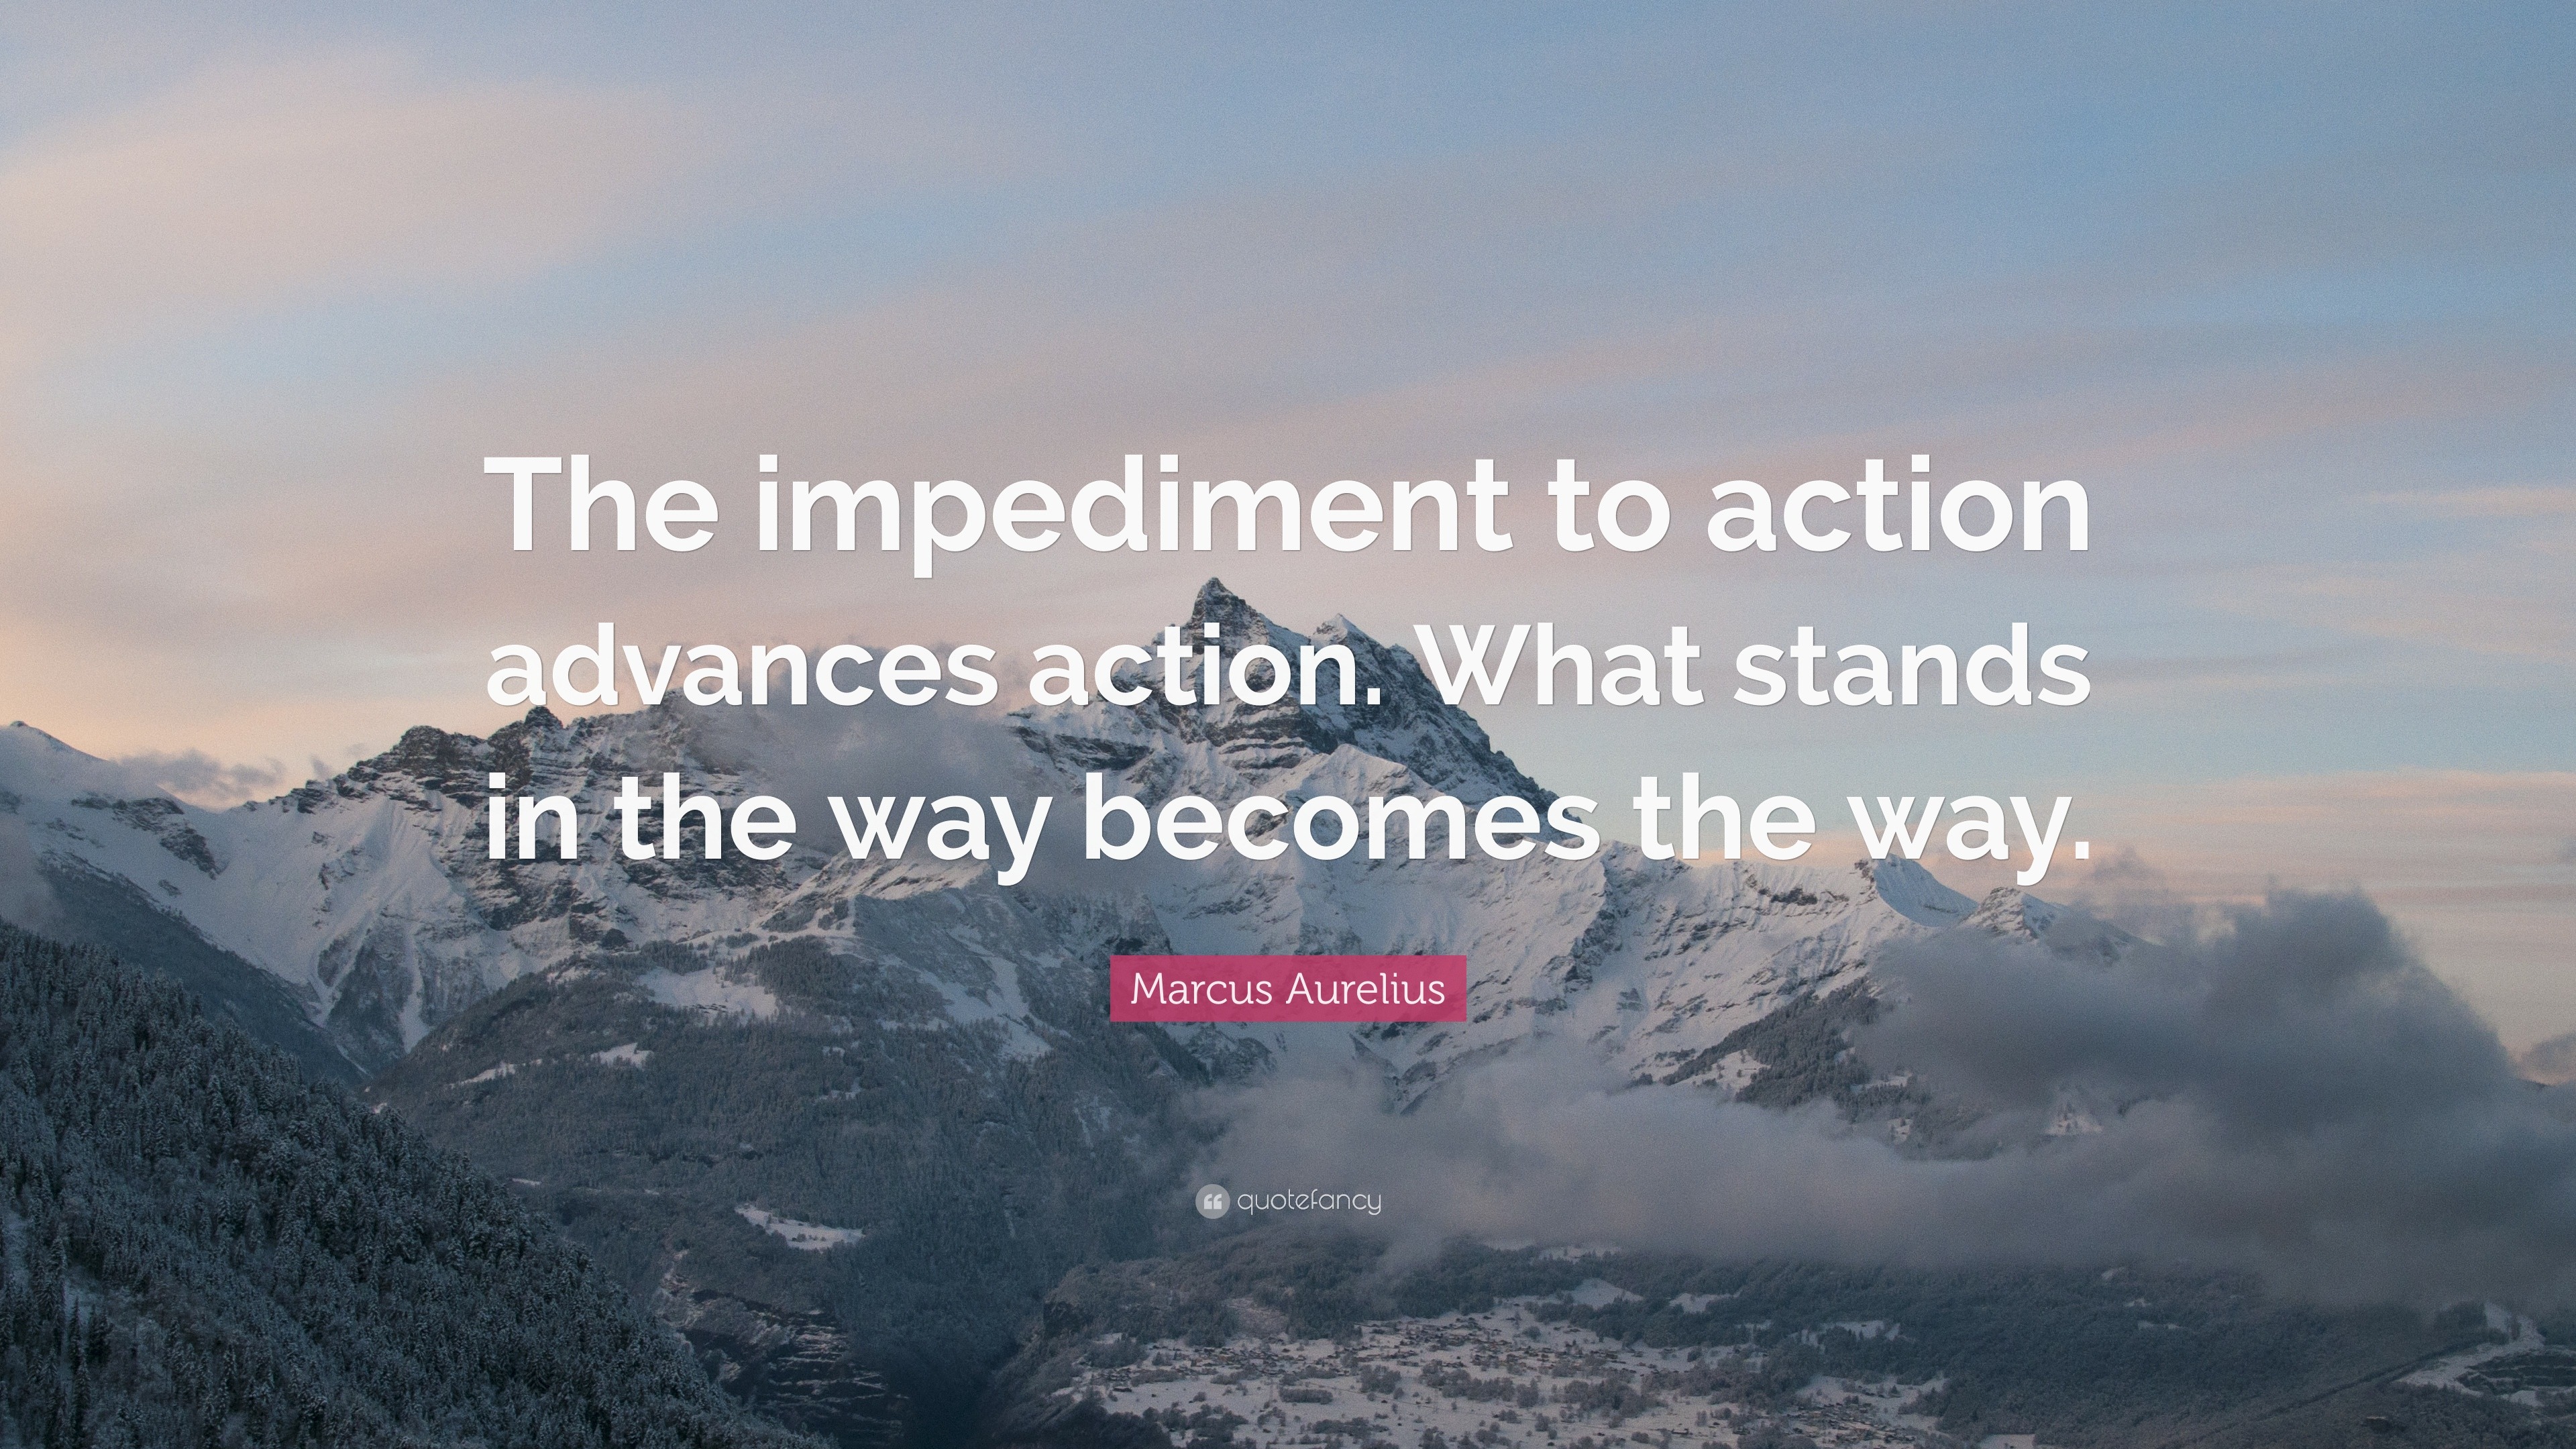 Marcus Aurelius Quote: “The impediment to action advances action. What